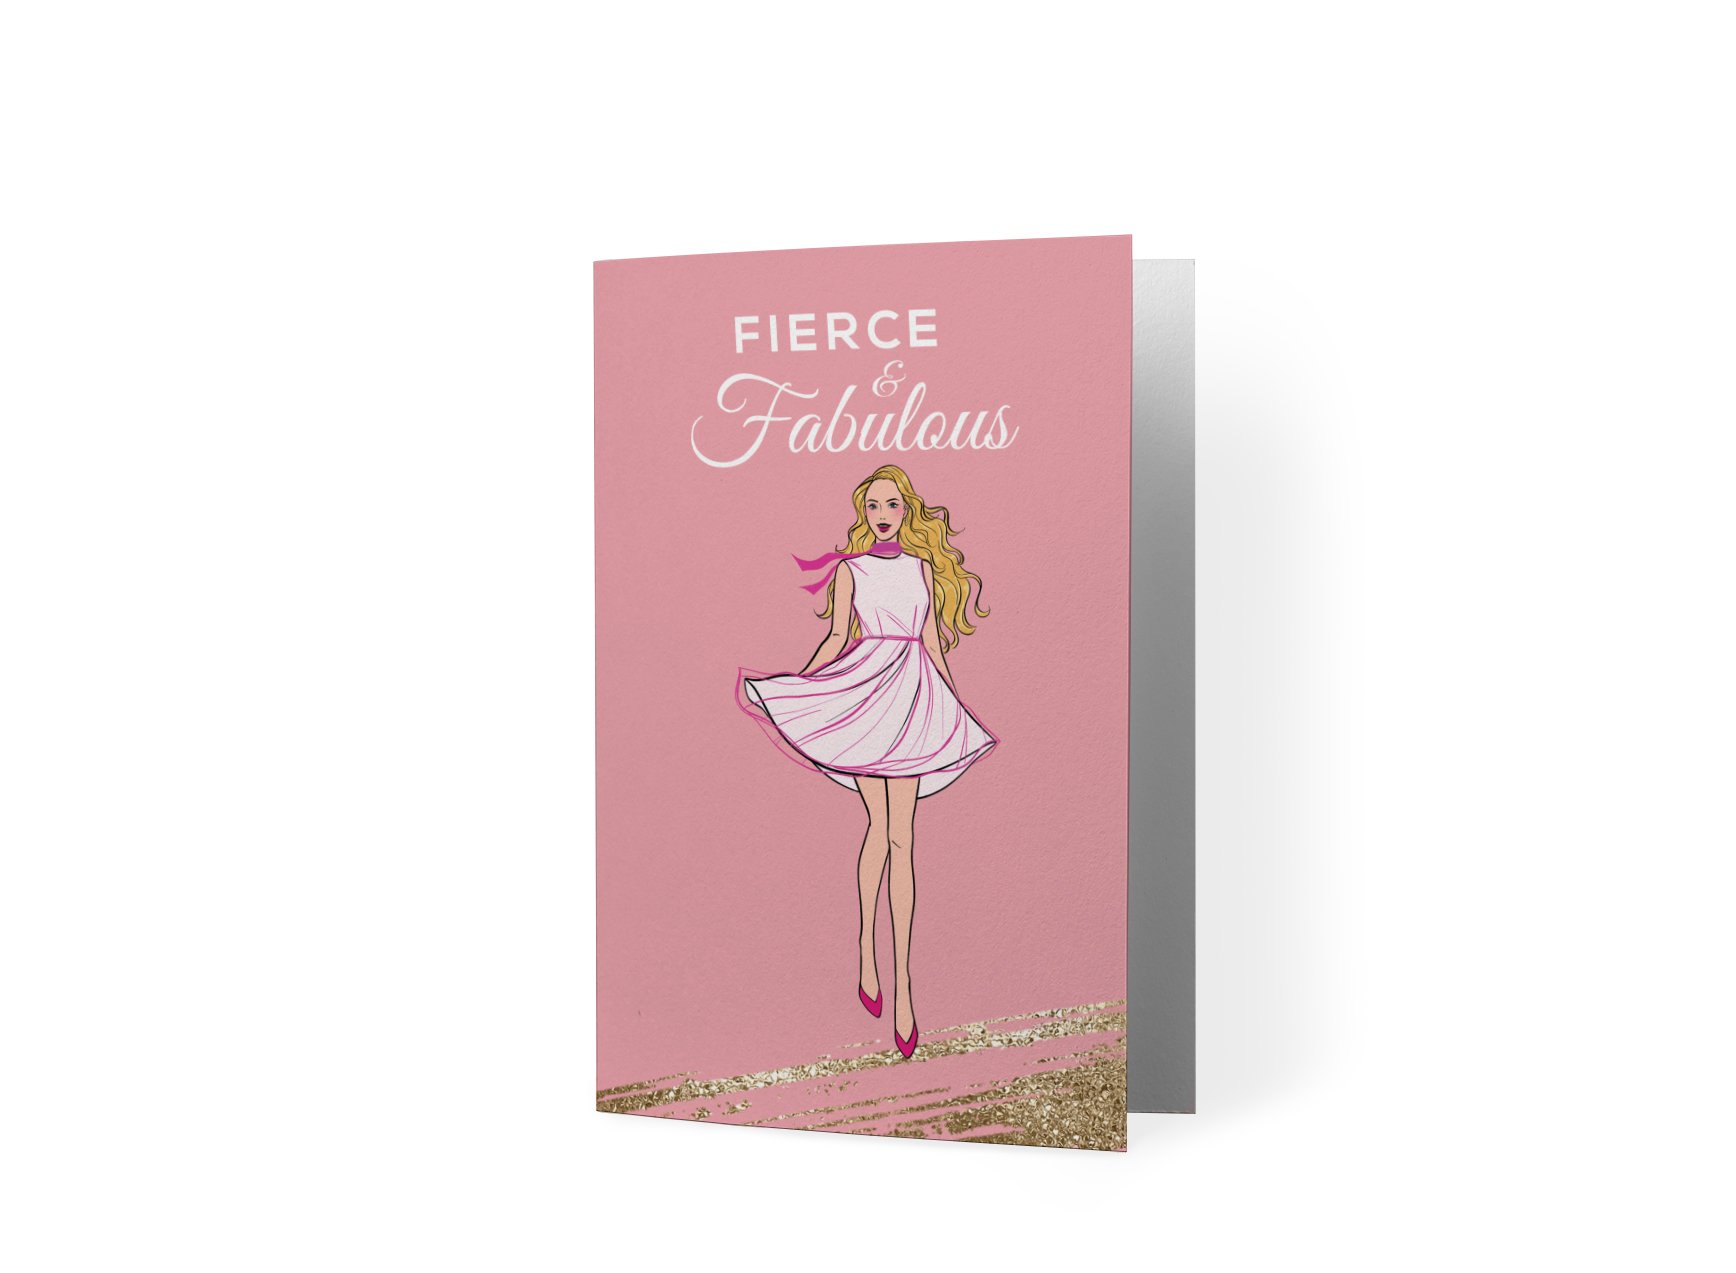 Fierce _ Fabulous - TSWM Gift Card Mockup.jpg